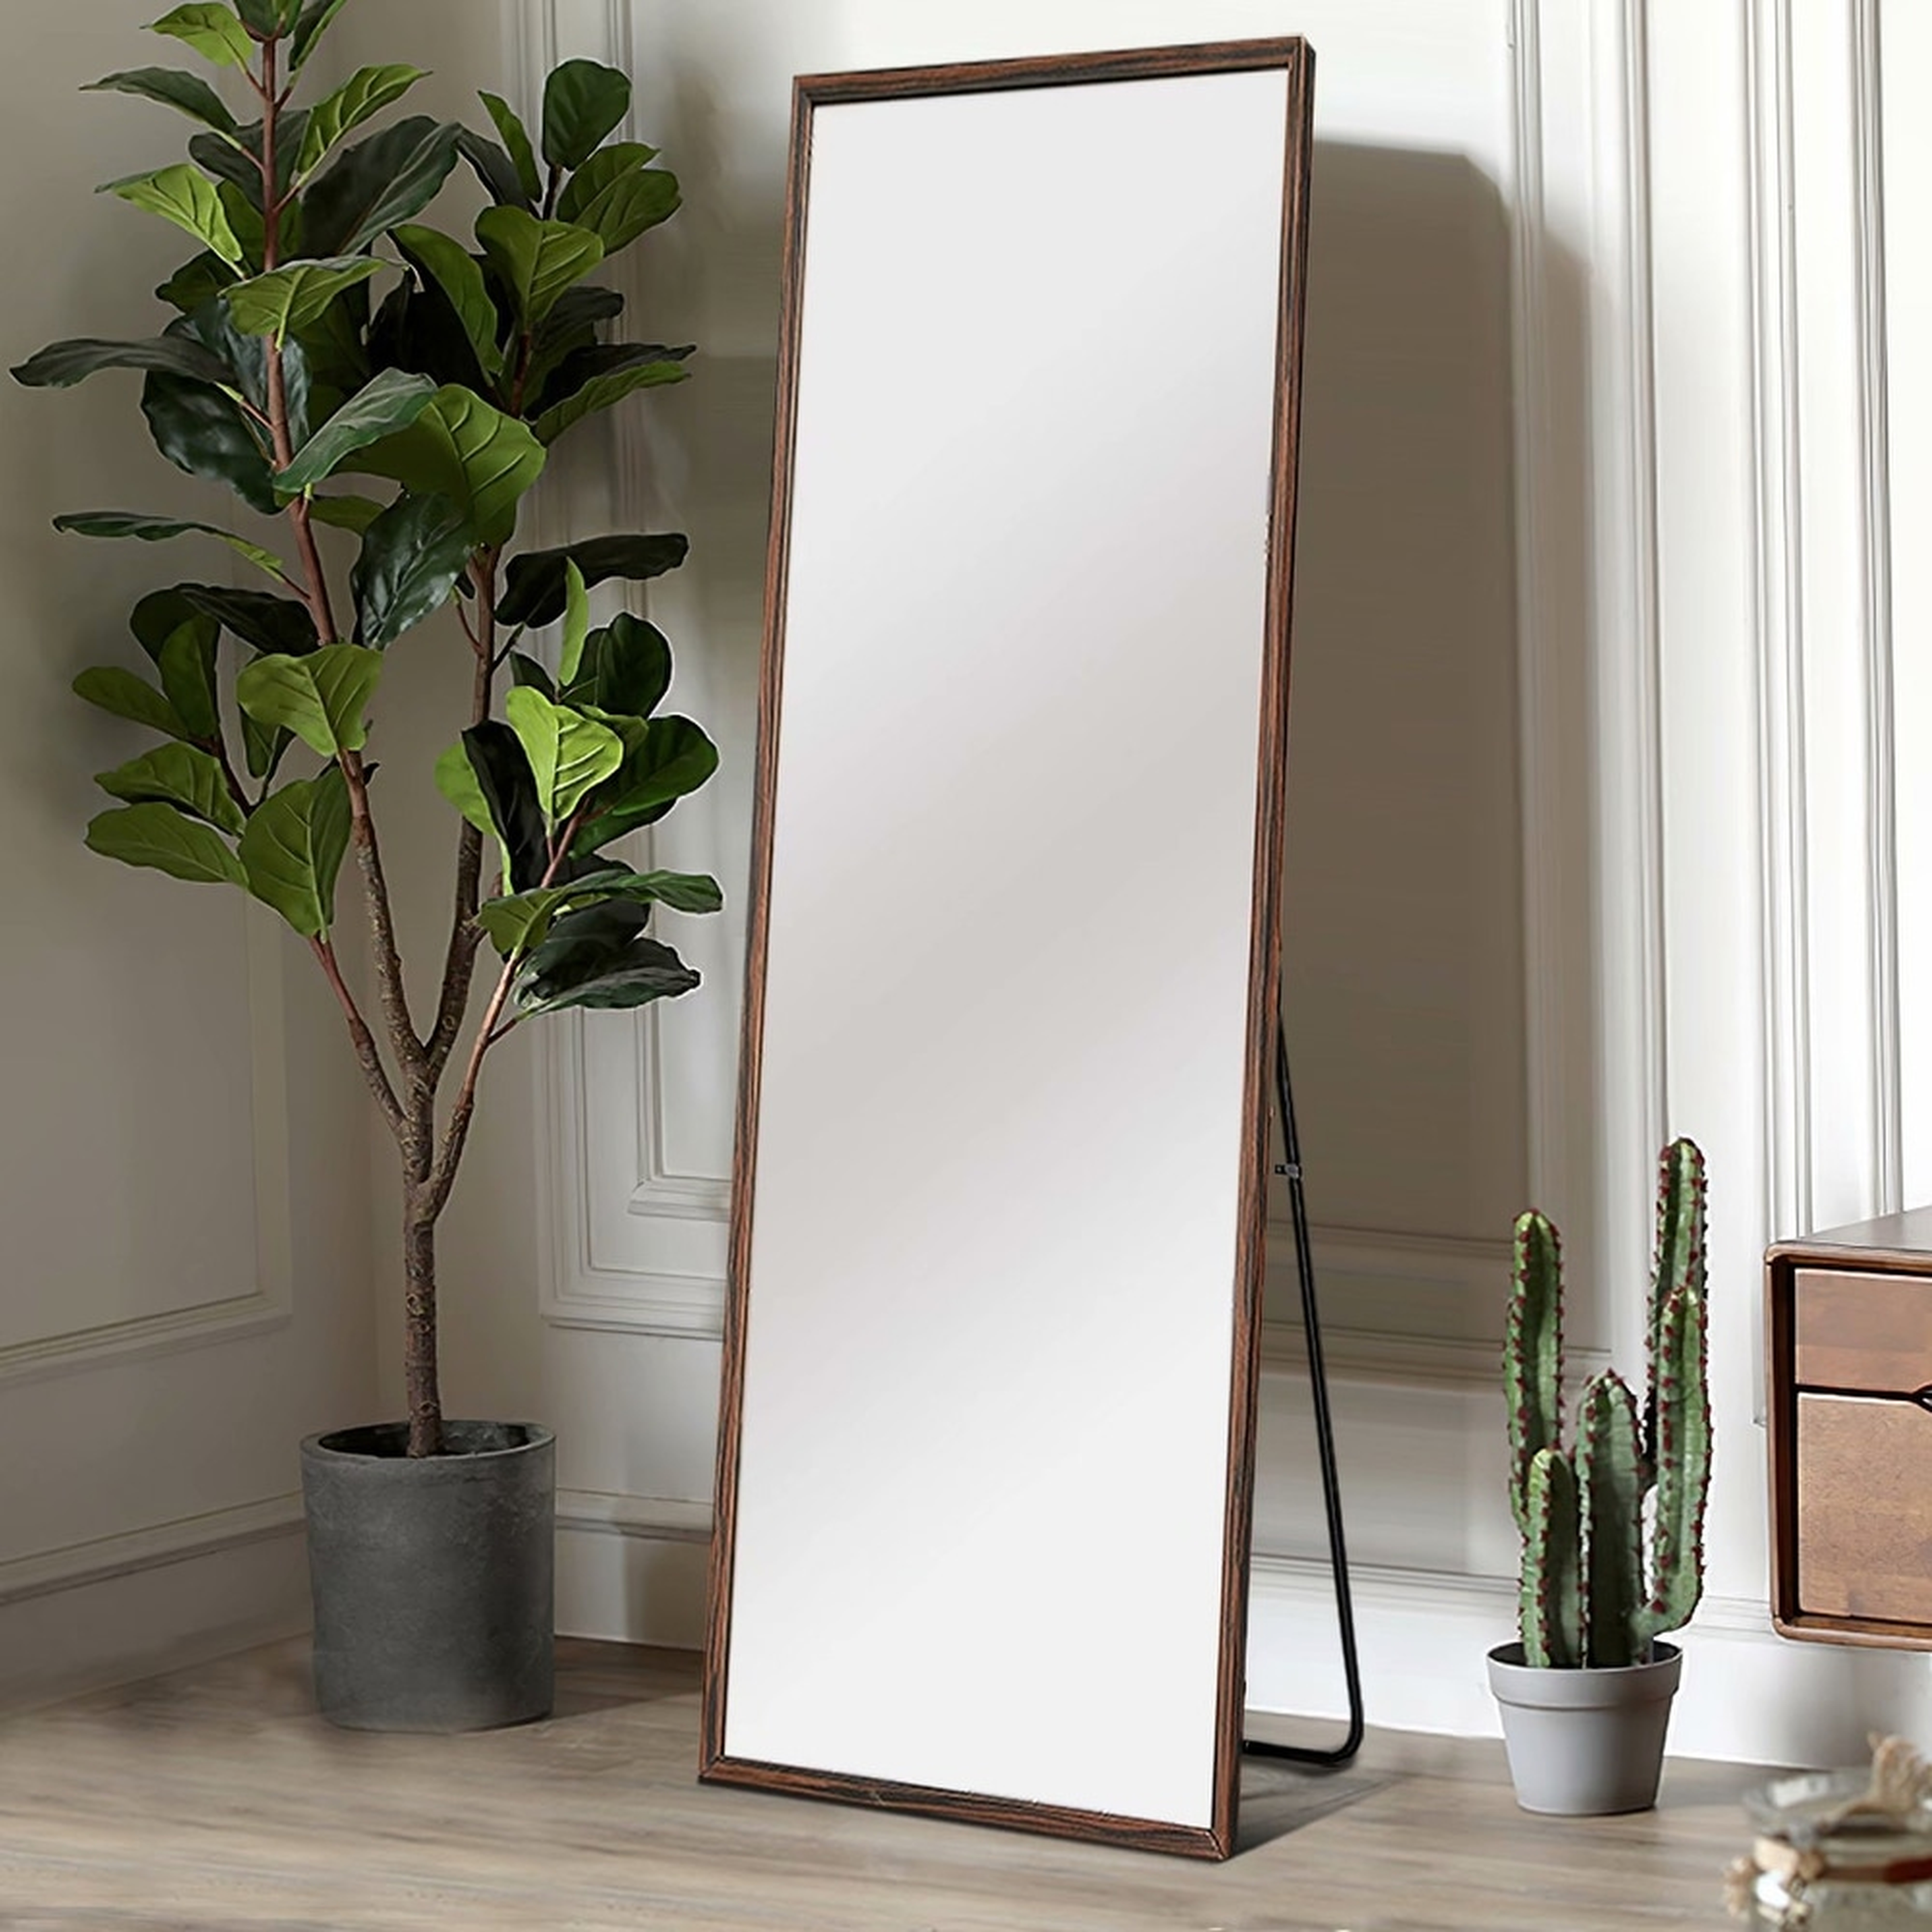 NeutypeChic Solid Wood Full Length Floor Mirror with Standing - Overstock